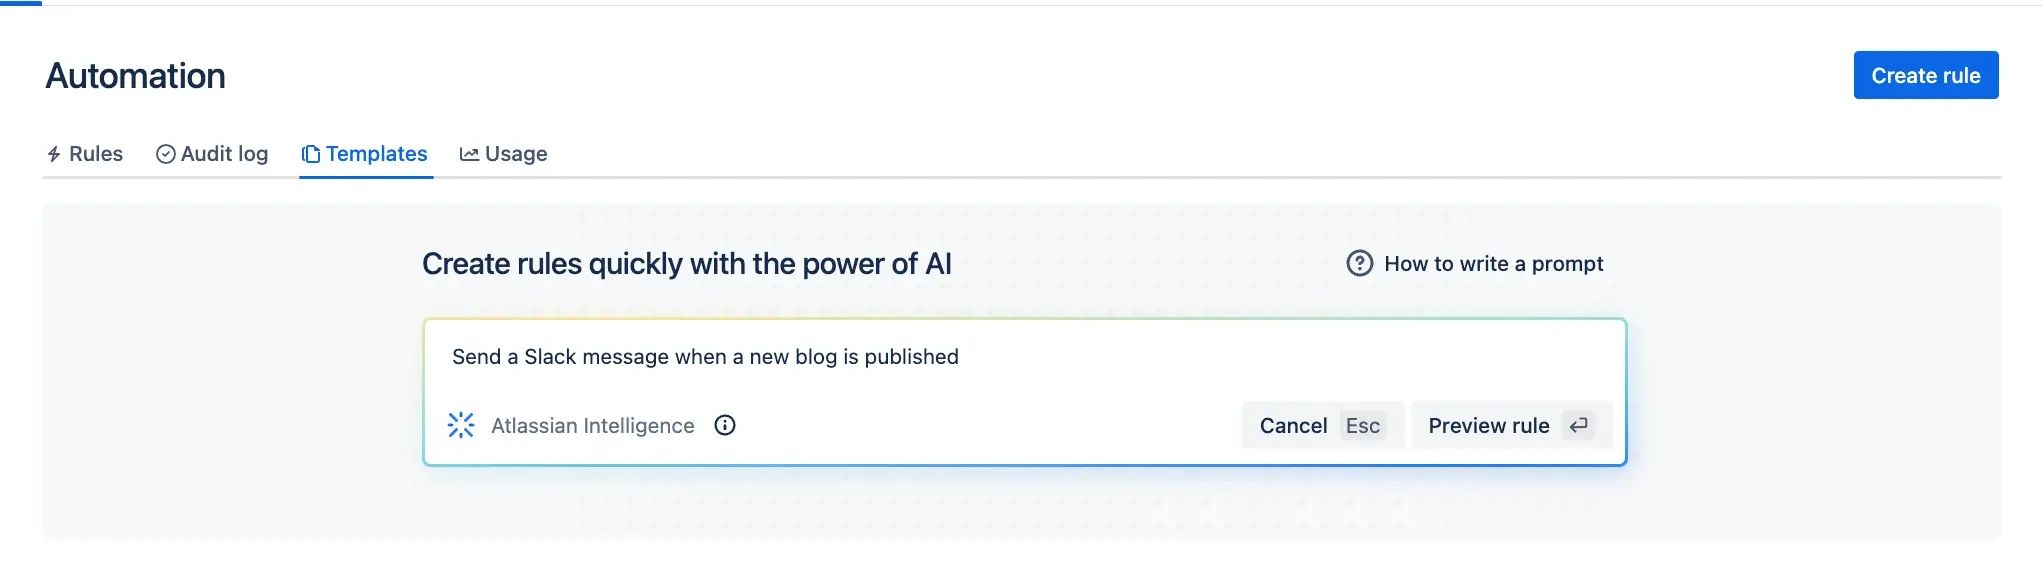 Ejemplo 1 de automatización de la IA de Atlassian